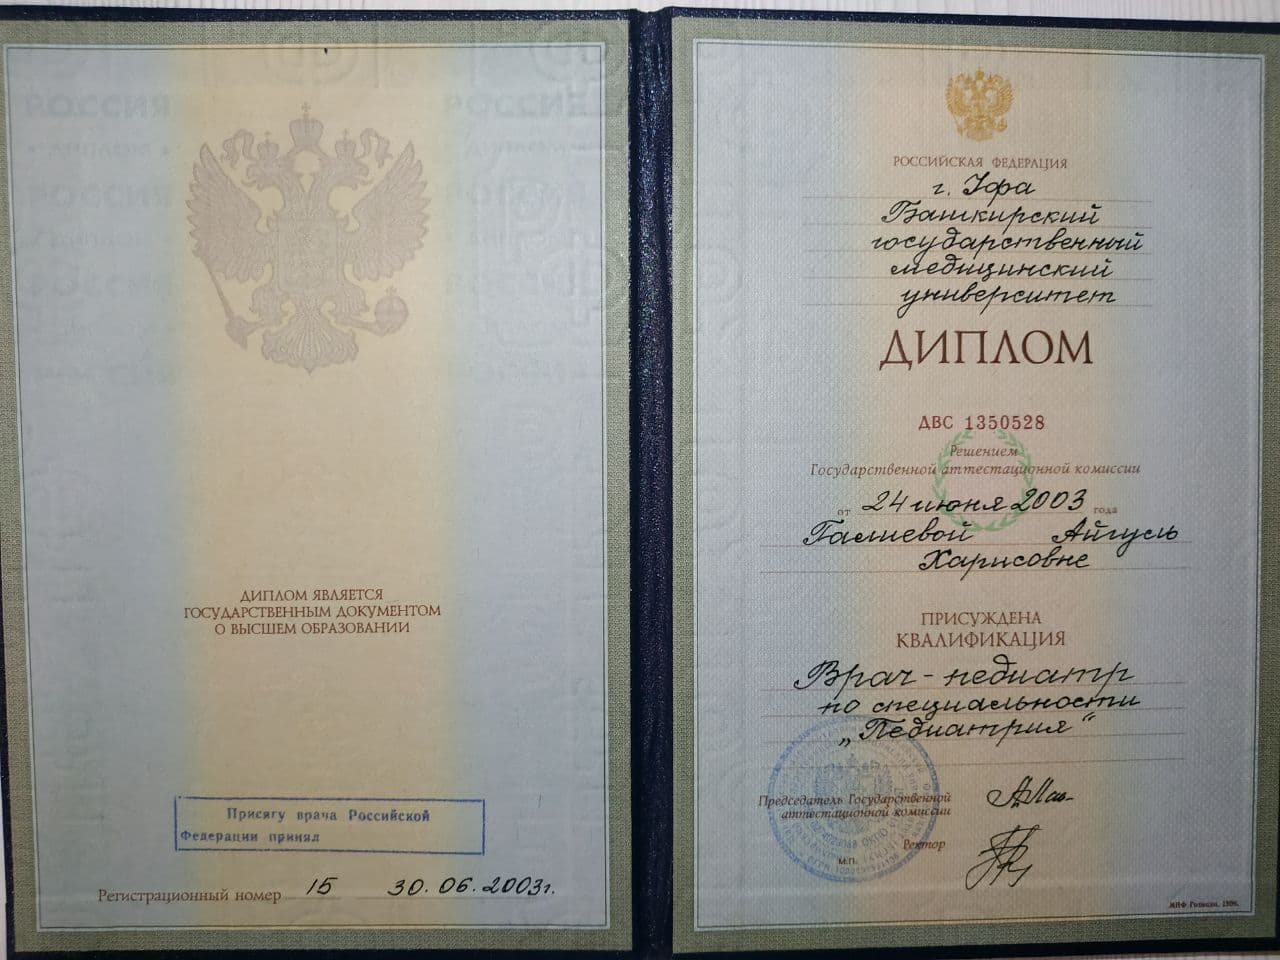 димломы и сертификаты